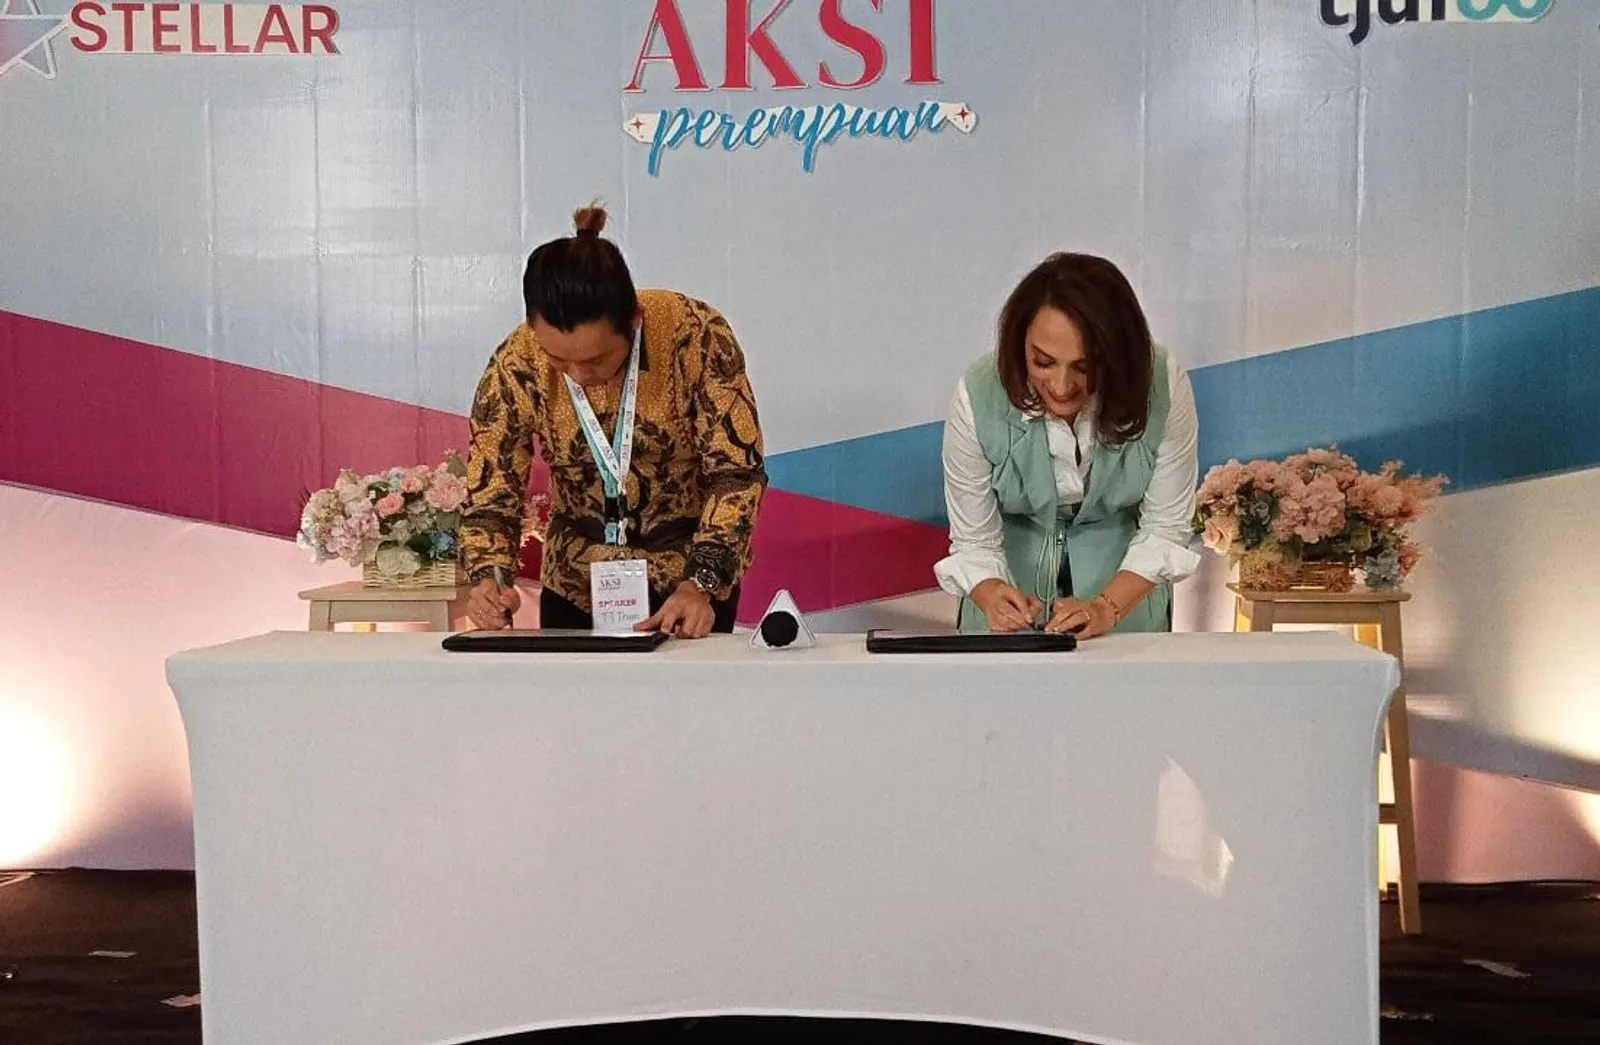 3 Kementerian Dukung Tjufoo Naikkan Bisnis Womenpreuner Indonesia